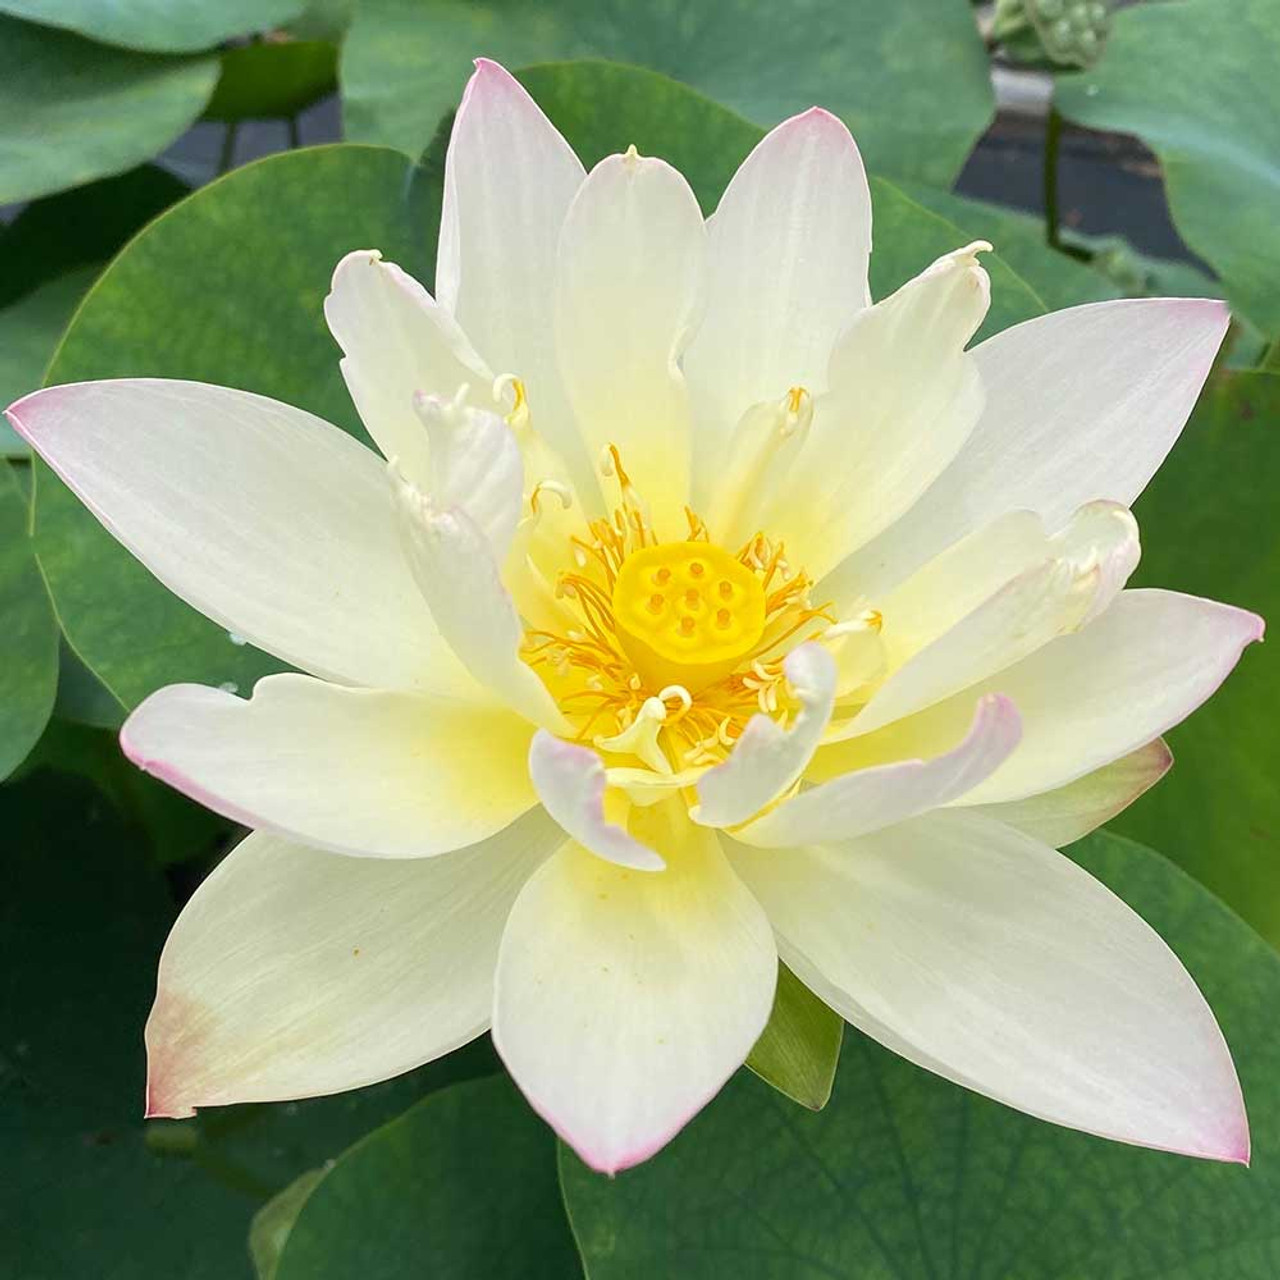 Ingredient 101: Lotus Flower